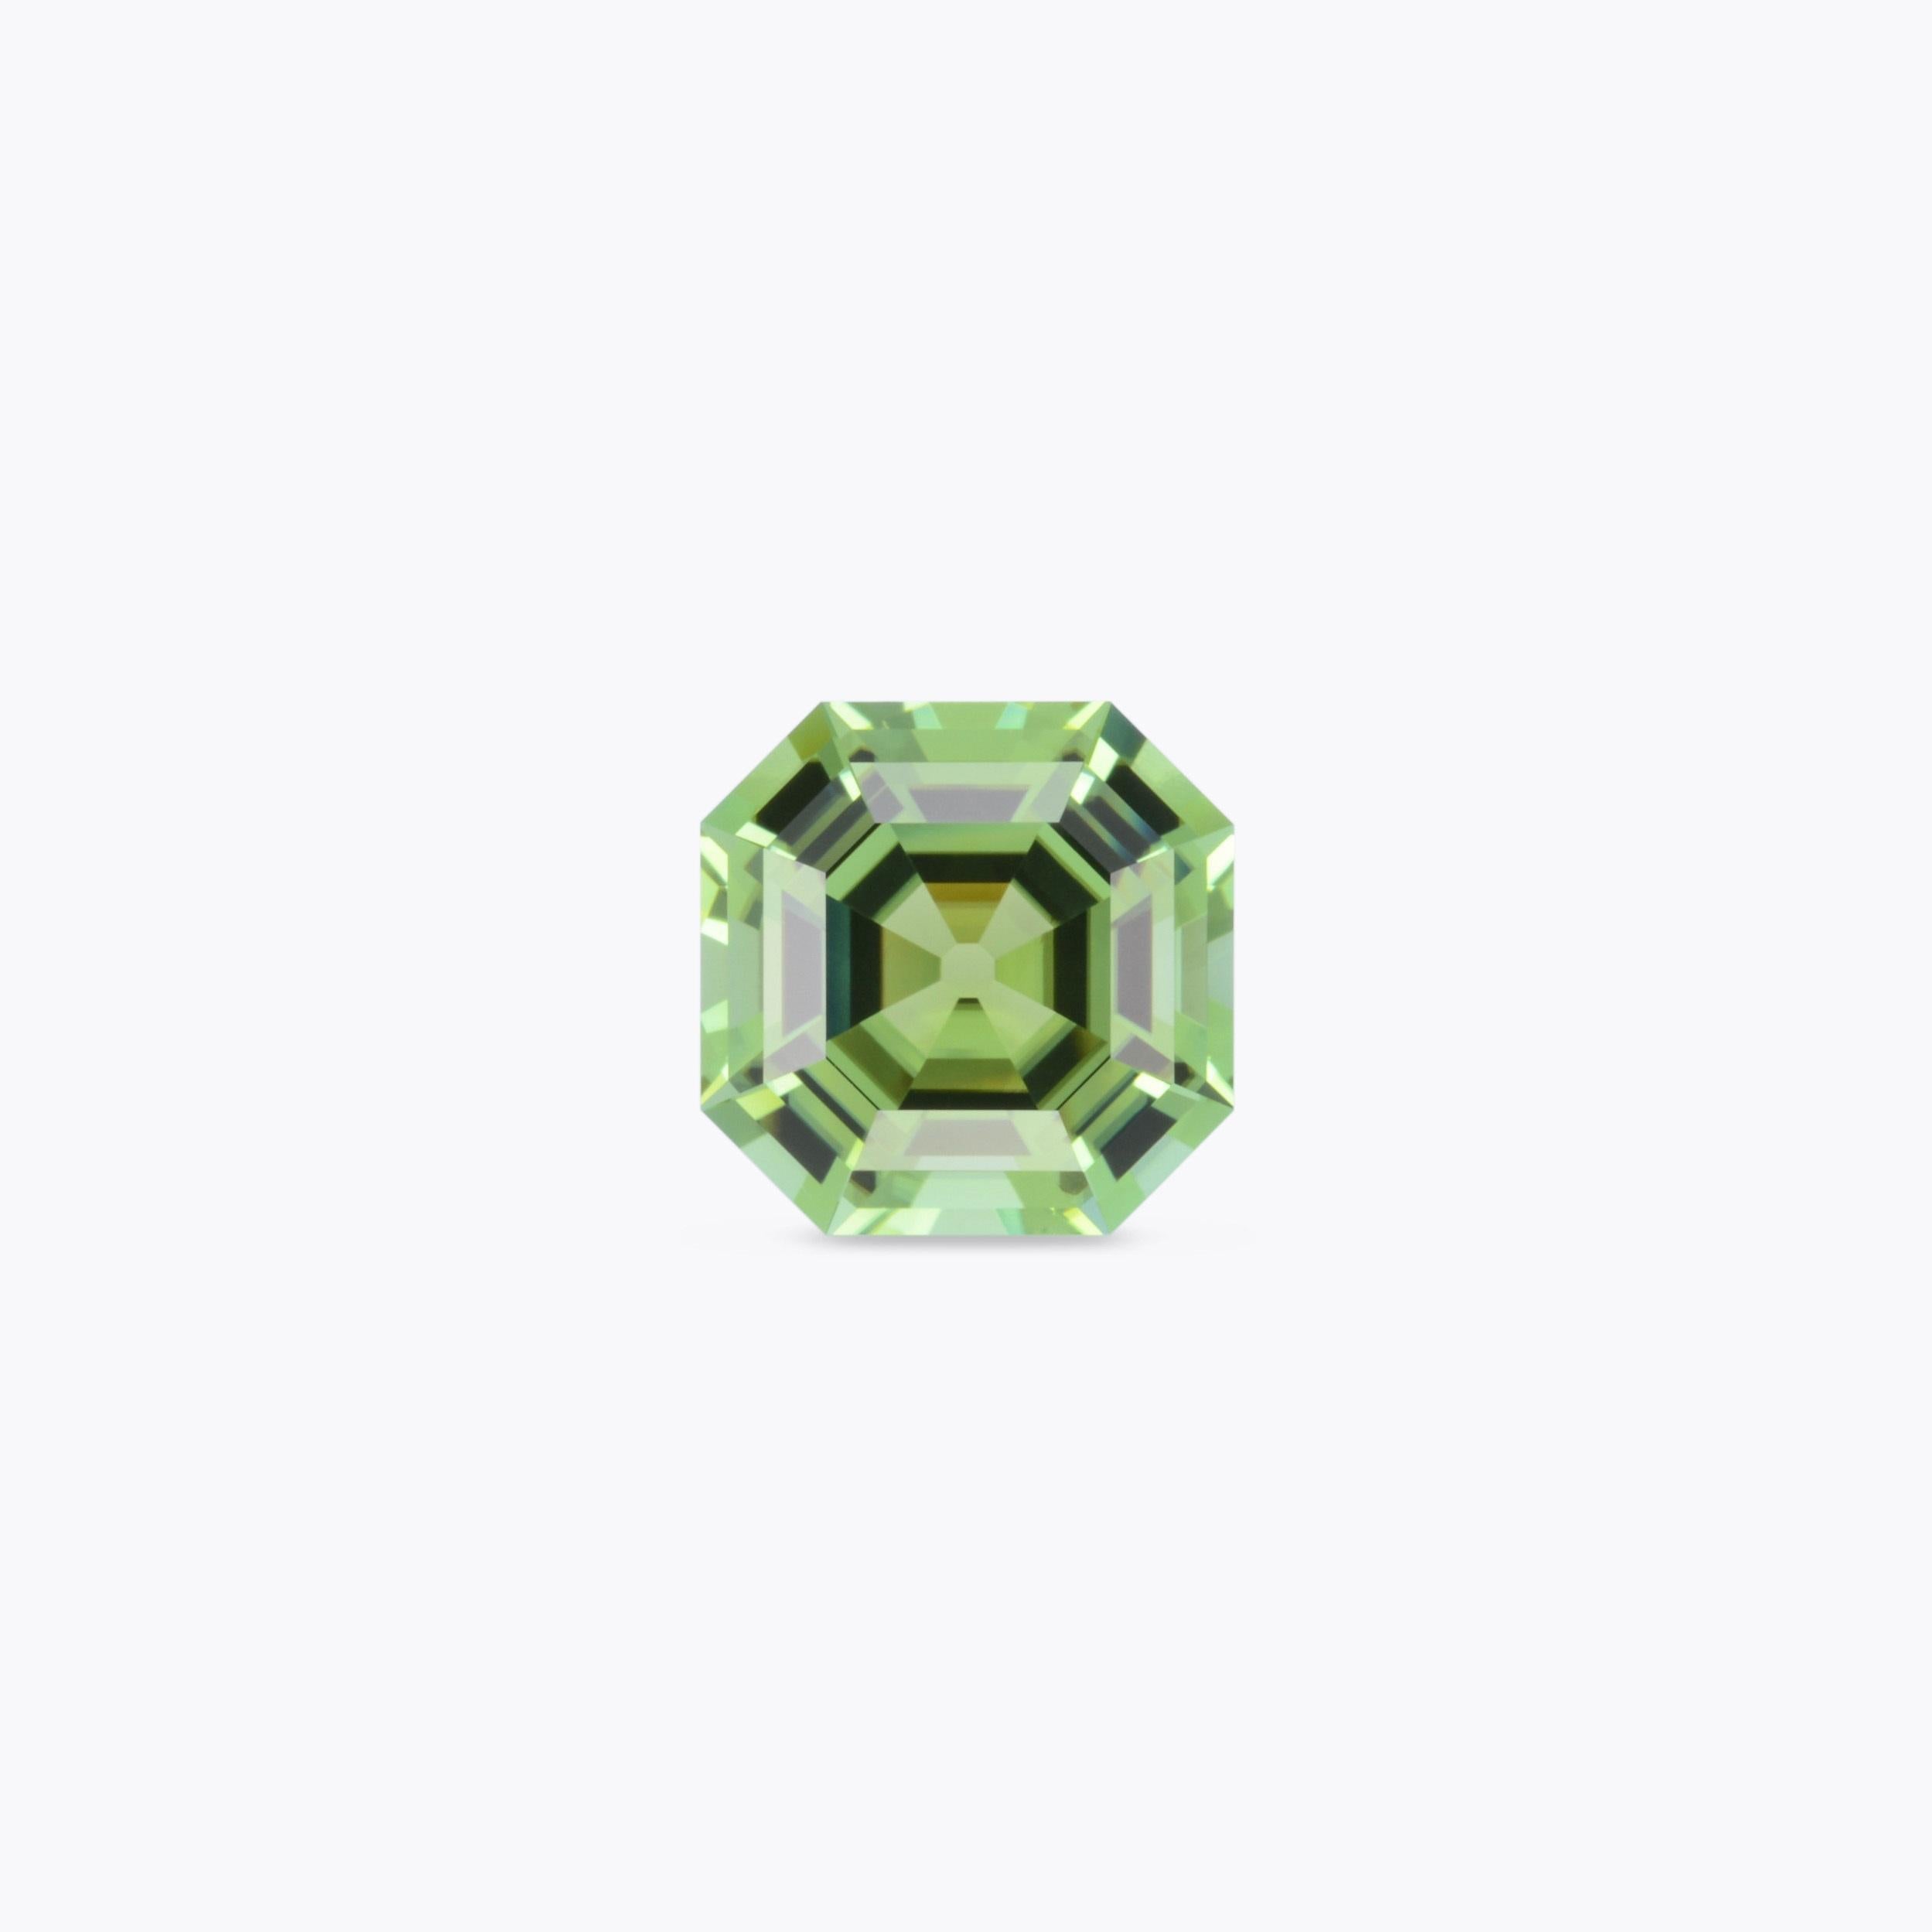 Contemporary Mint Green Tourmaline Ring Gem 7.47 Carat Asscher Cut Loose Gemstone